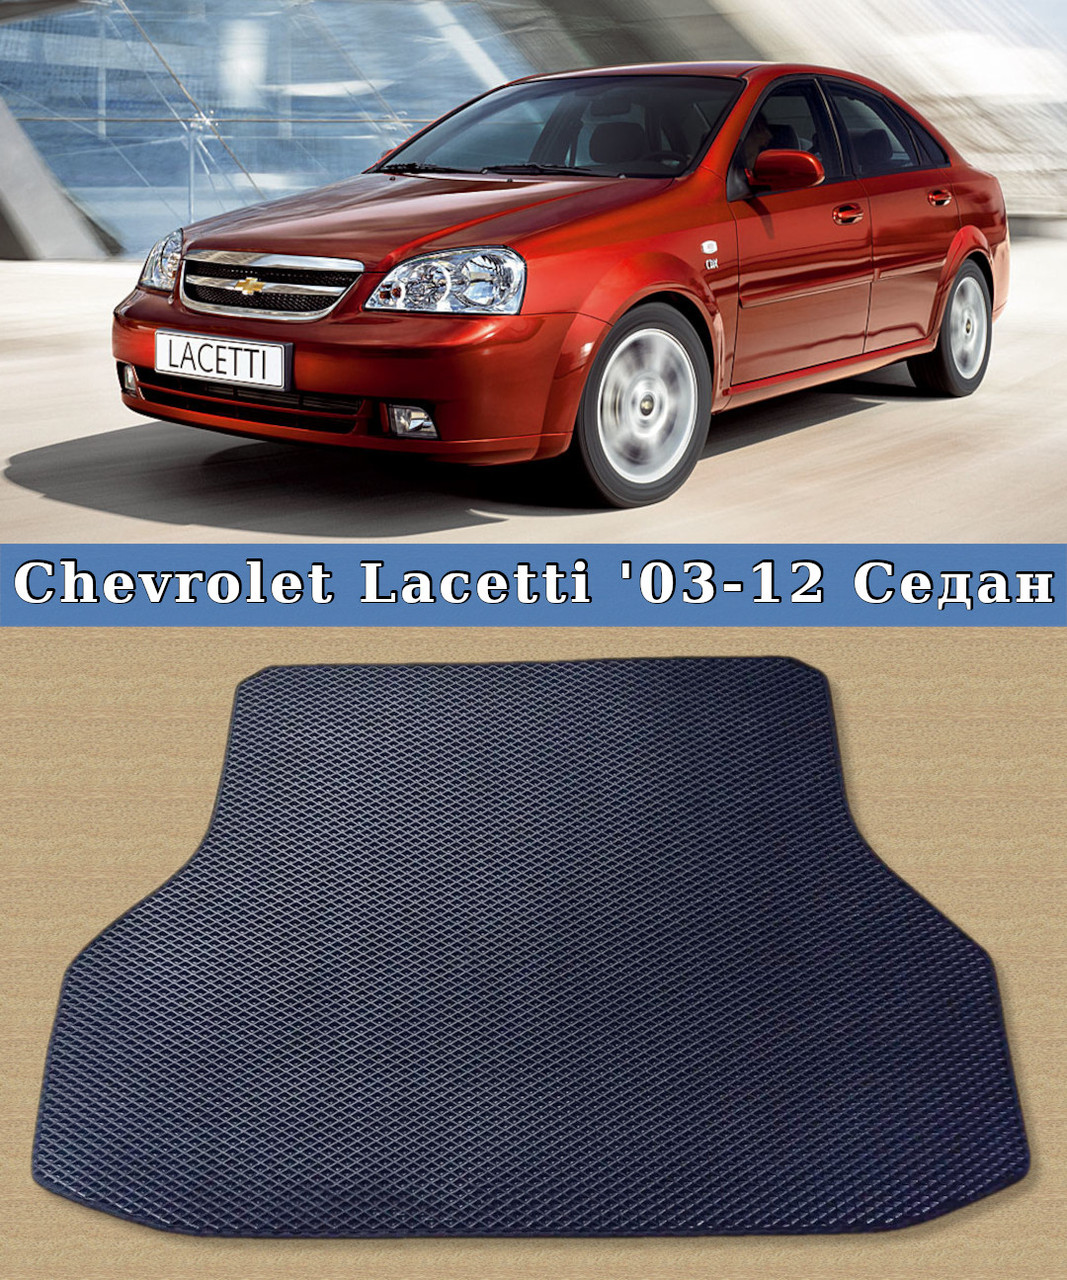 ЄВА килимок в багажник Chevrolet Lacetti 2003-2012. EVA килим багажника Шевроле Лачеті